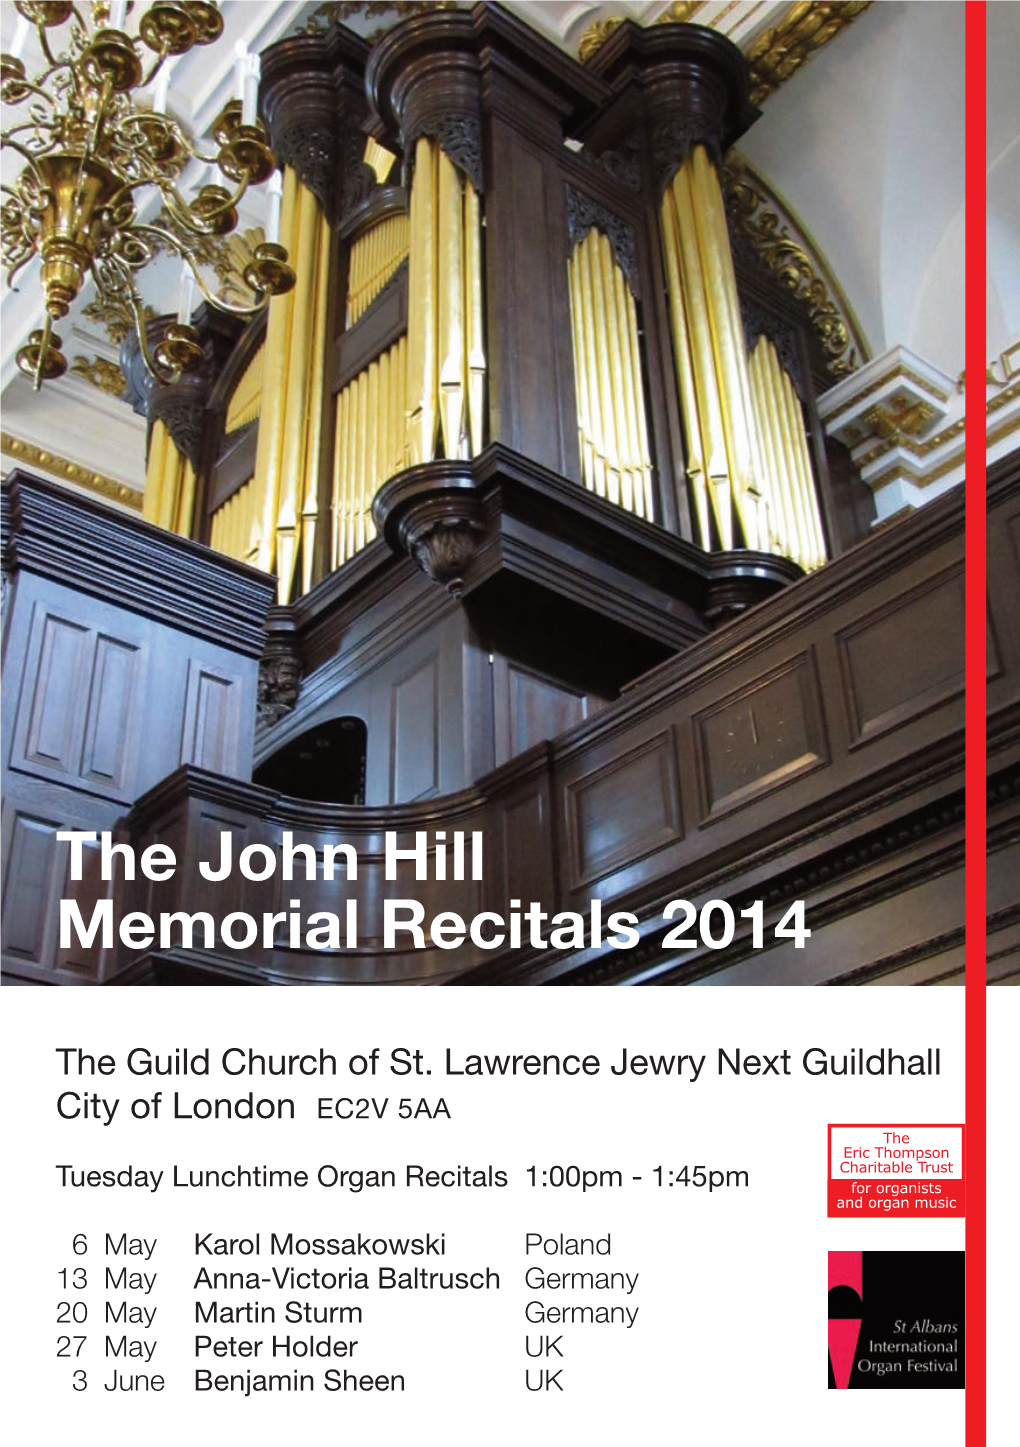 The John Hill Memorial Recitals 2014